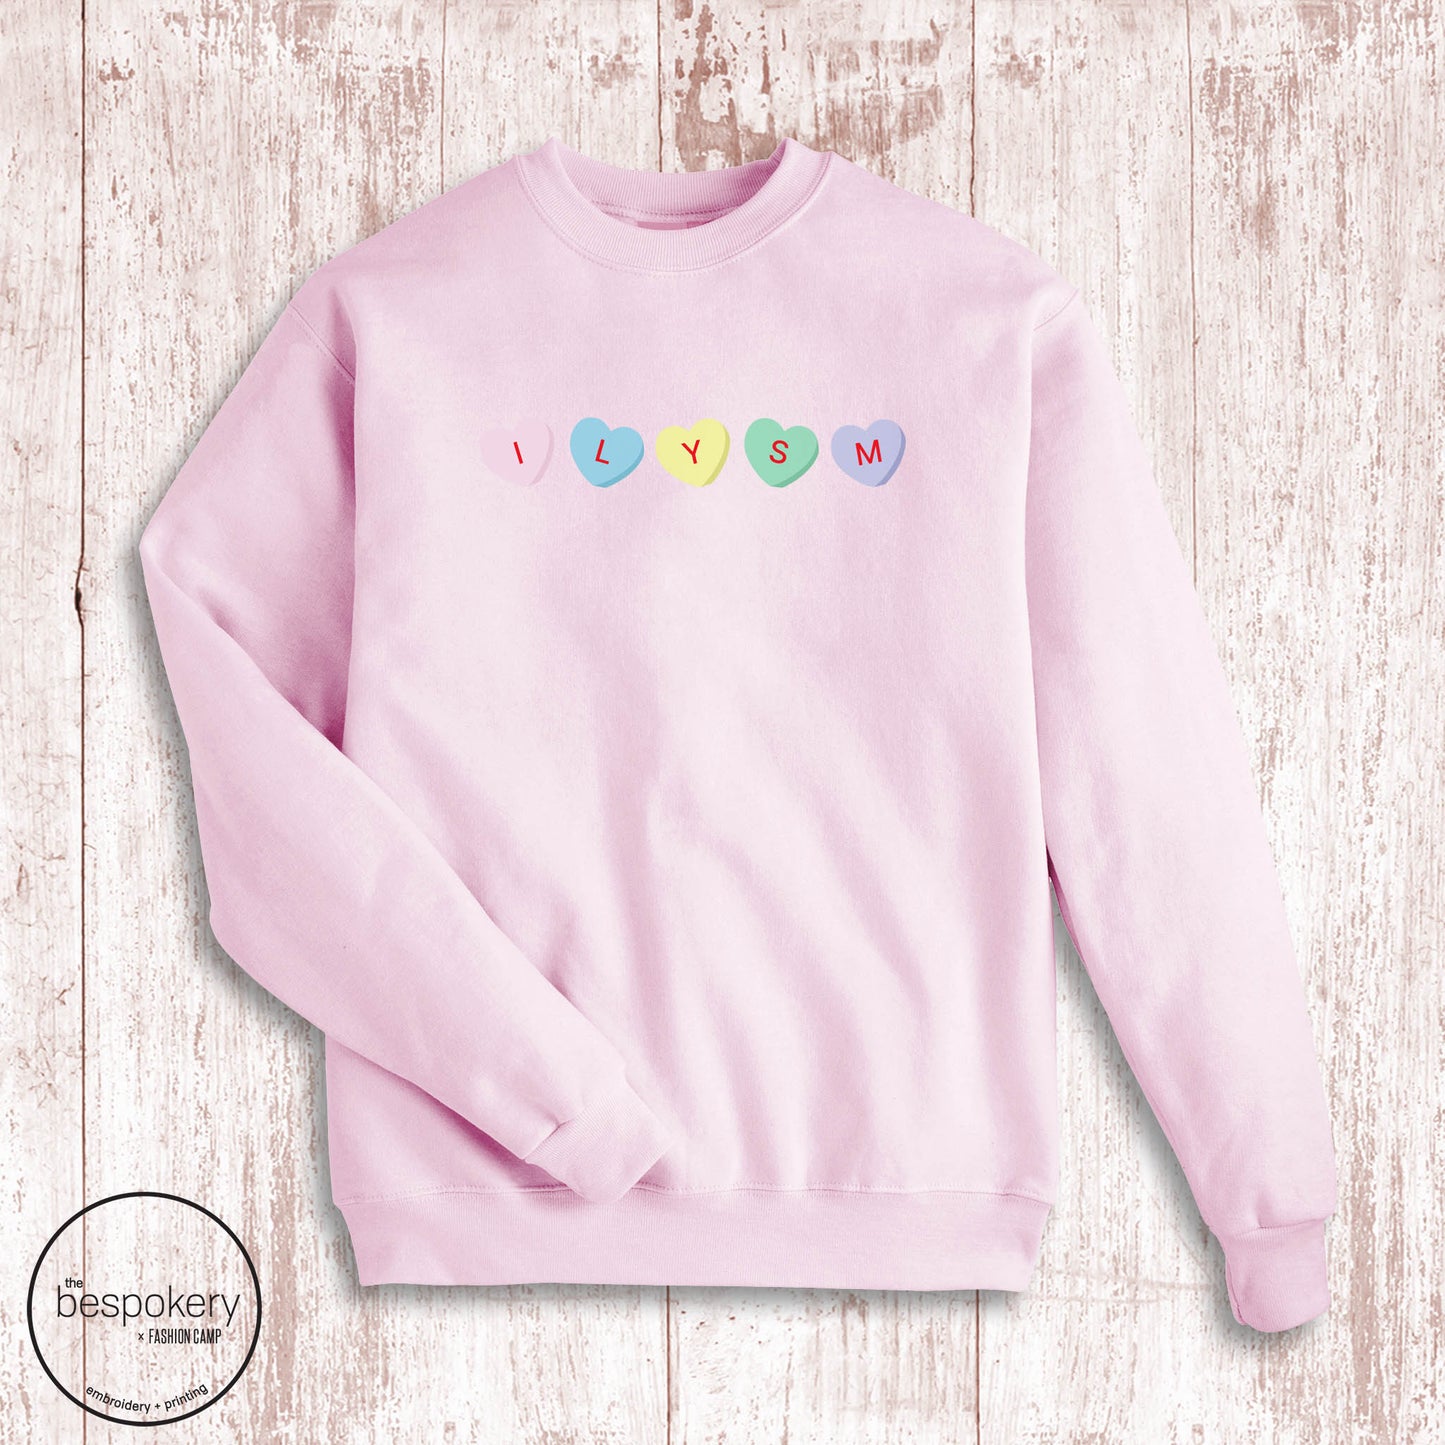 "ILYSM" Sweatshirt- Pink (Adult ONLY)